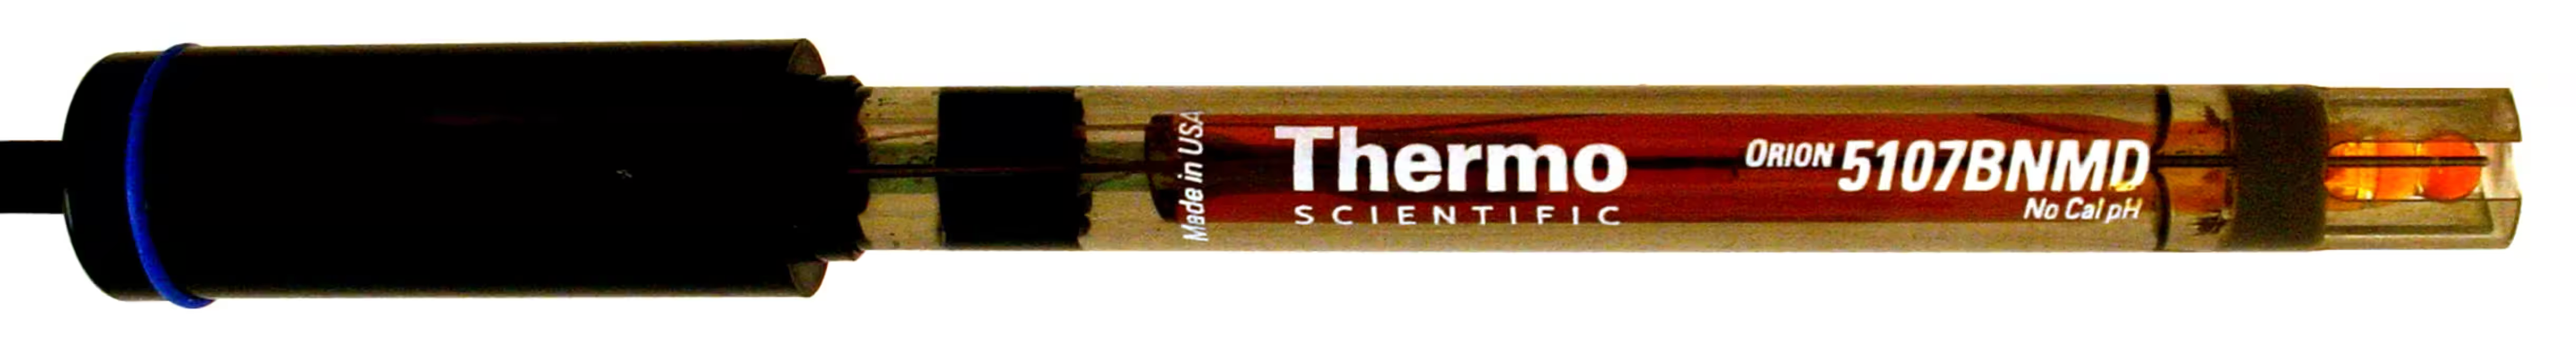 Thermo Scientific Orion 5107BNMD - No Cal® epoksydowa elektroda pH kombinowana z wbudowanym czujnikiem automatycznej komensacji temperatury (ATC)